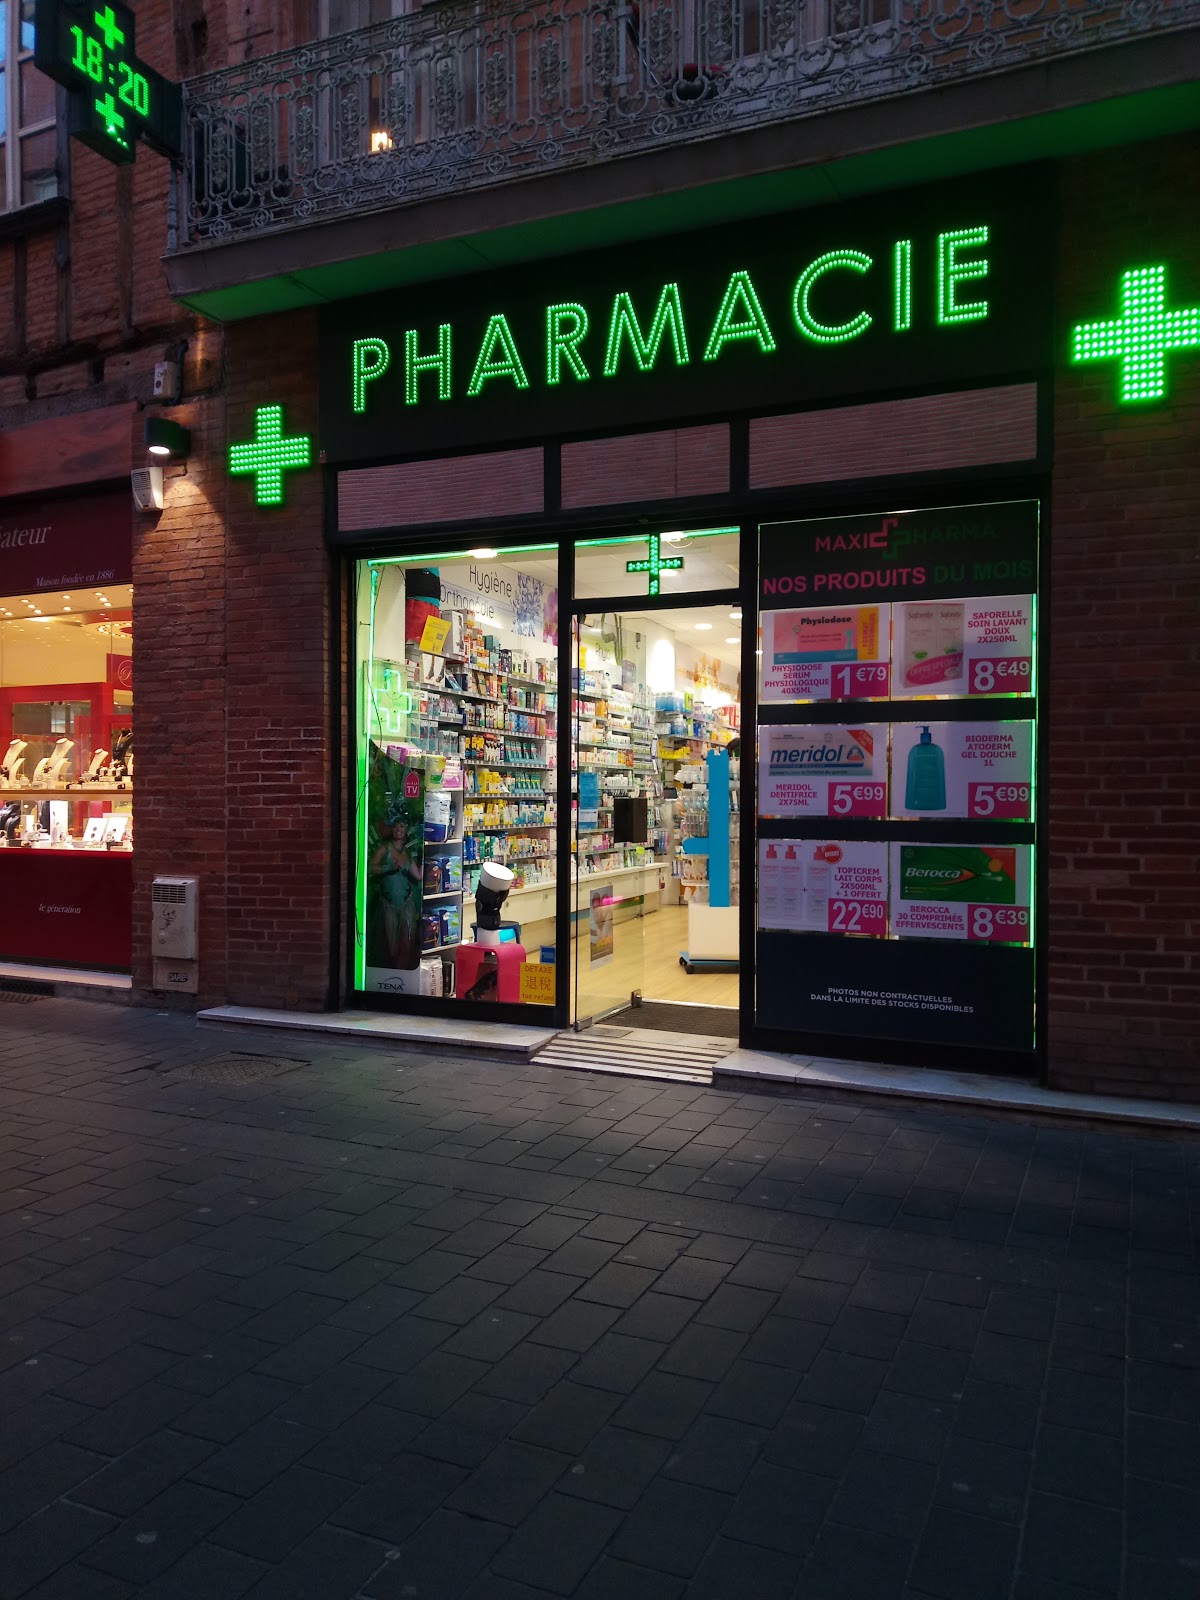 Pharmacie Puig